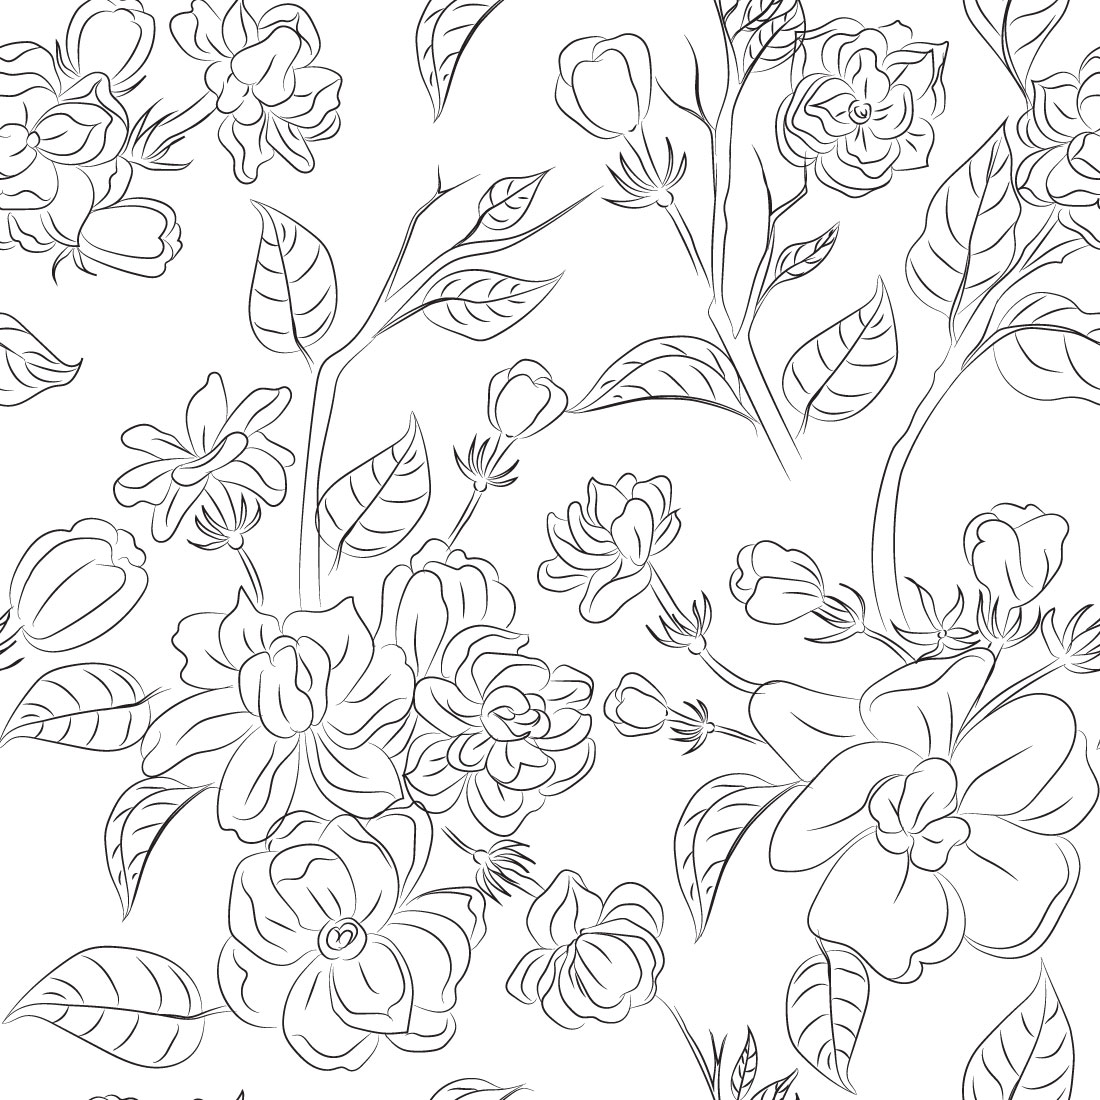 Jasmine Flower Line Art cover image.